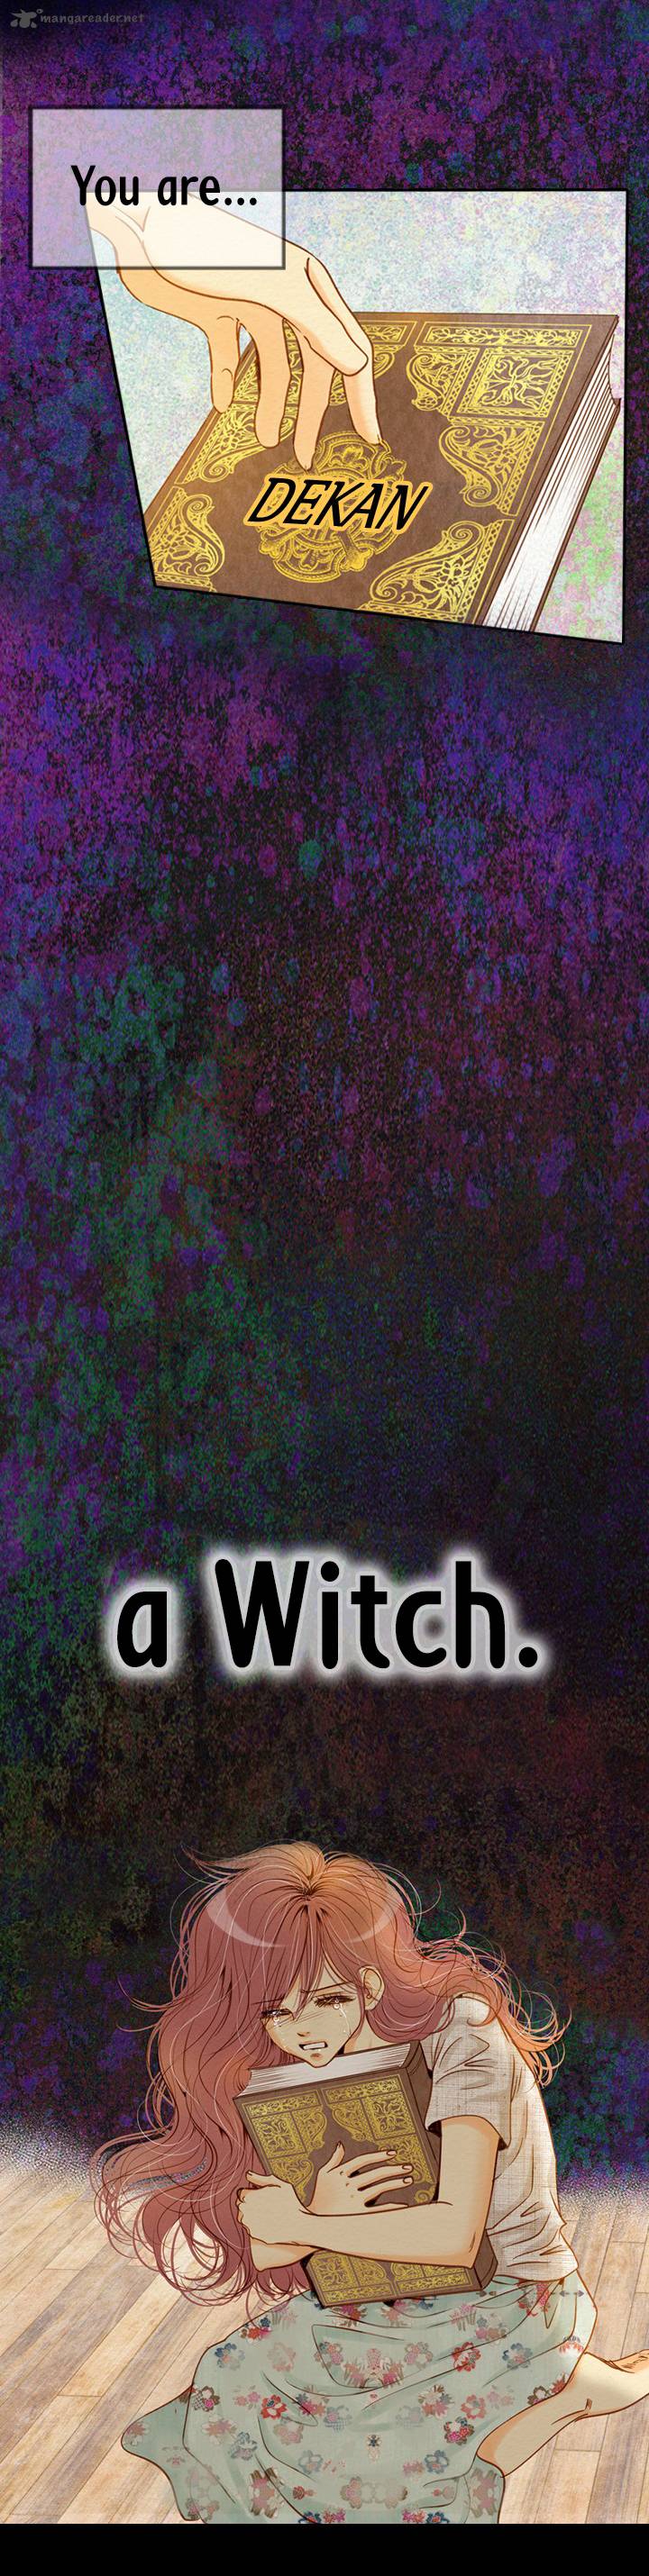 witch_workshop_2_45